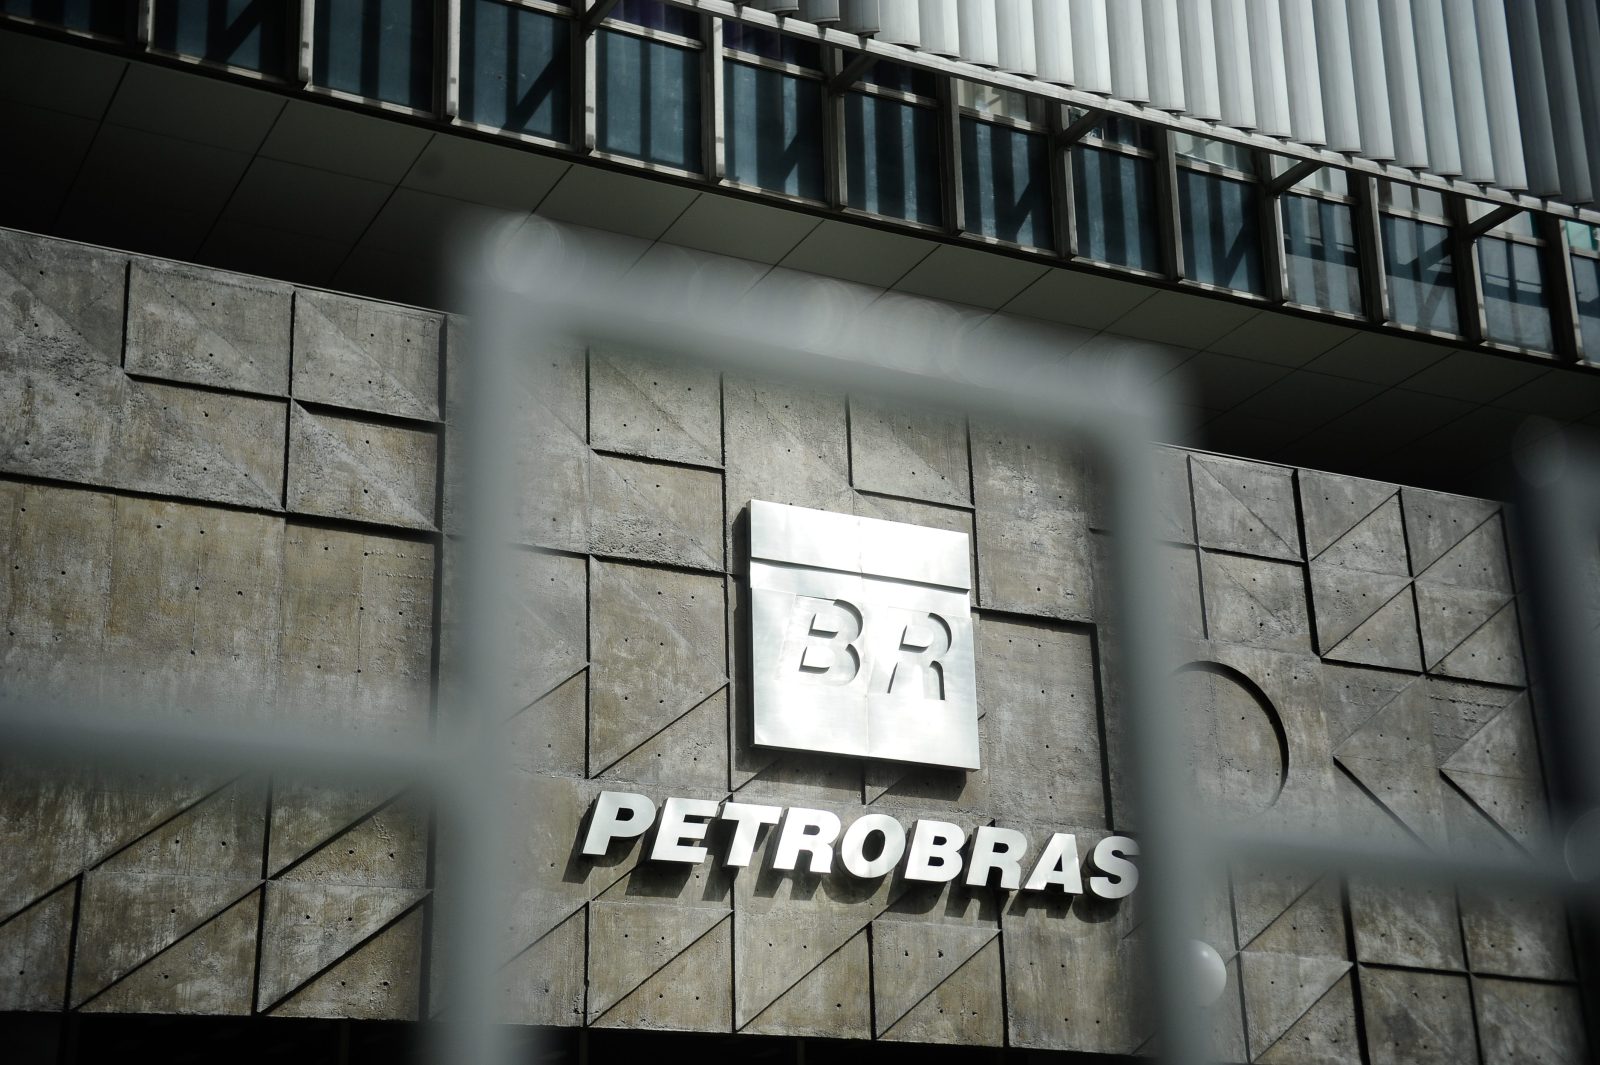 Acionistas da Petrobras (PETR4) aprovam R$ 36,1 bilhões em dividendos extraordinários